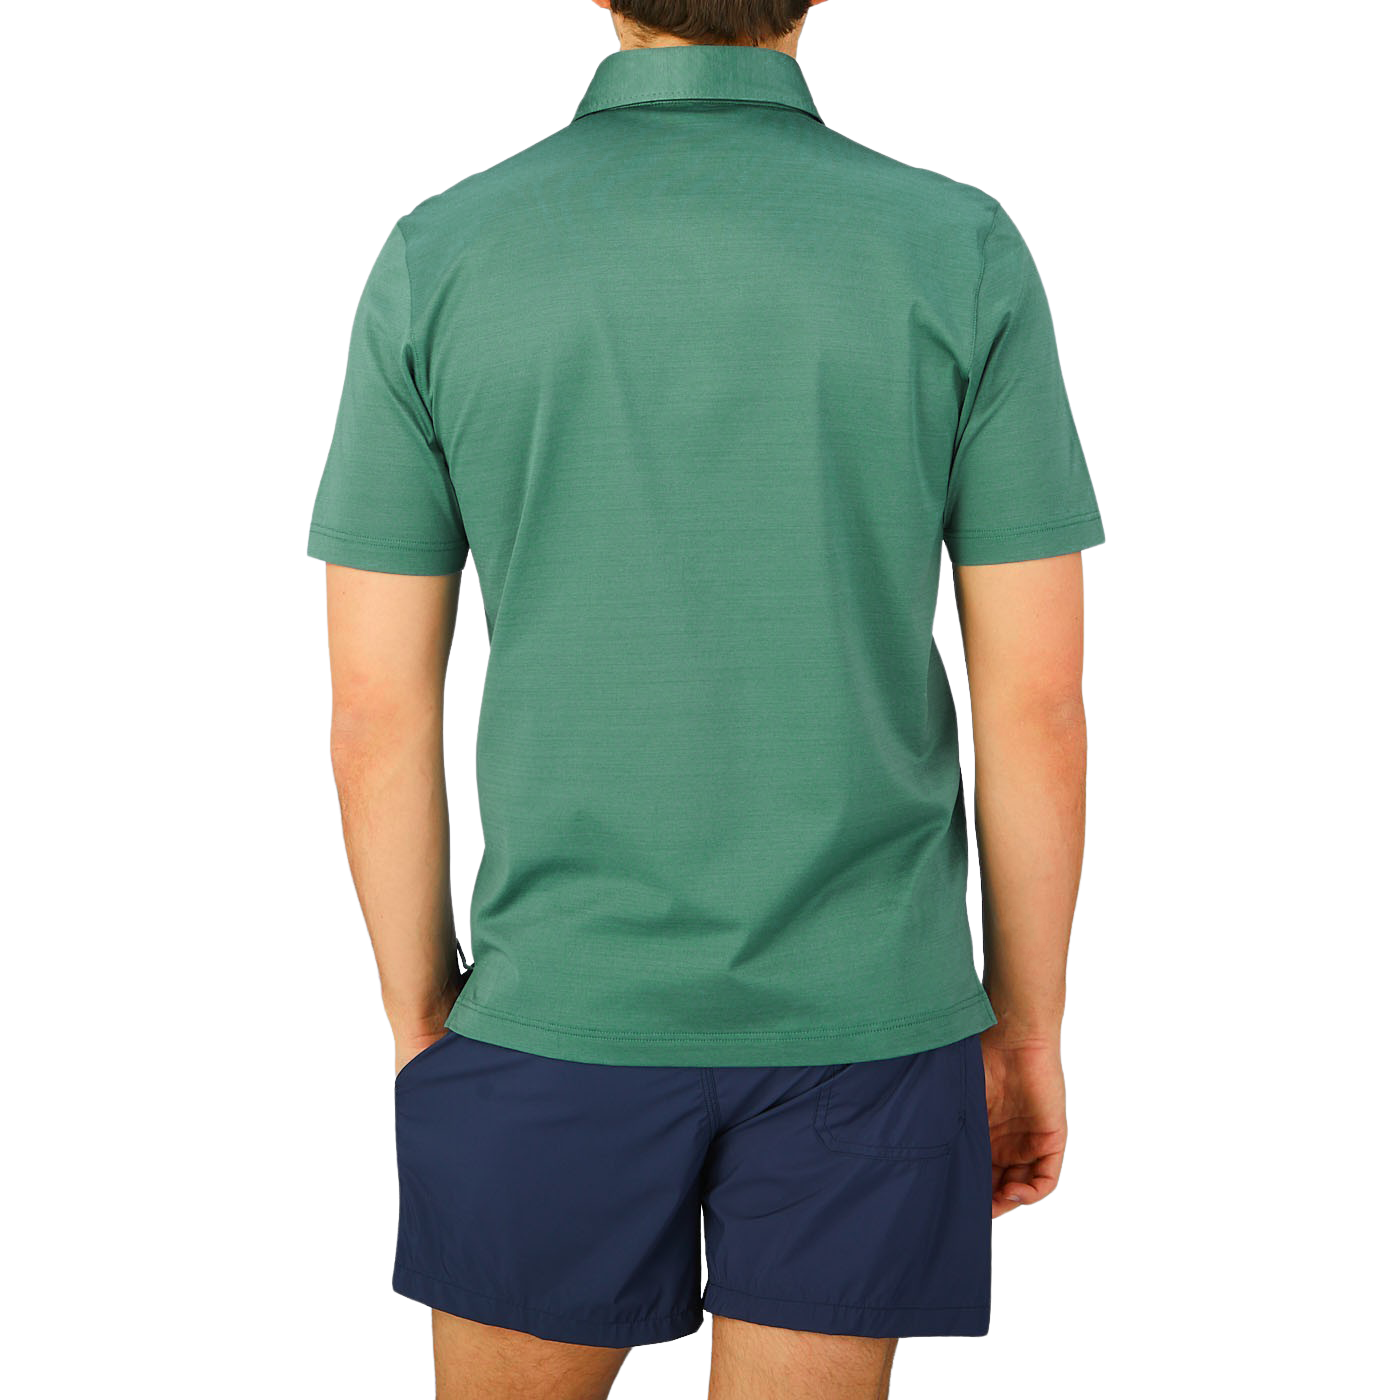 The back view of a man wearing an Aqua Green Cotton Filo Scozia Gran Sasso polo shirt.